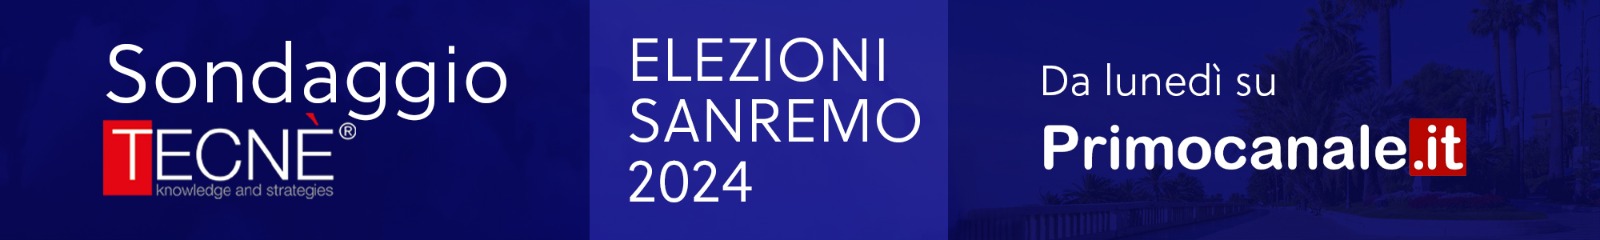 SONDAGGIO TECNE' - Elezioni Sanremo